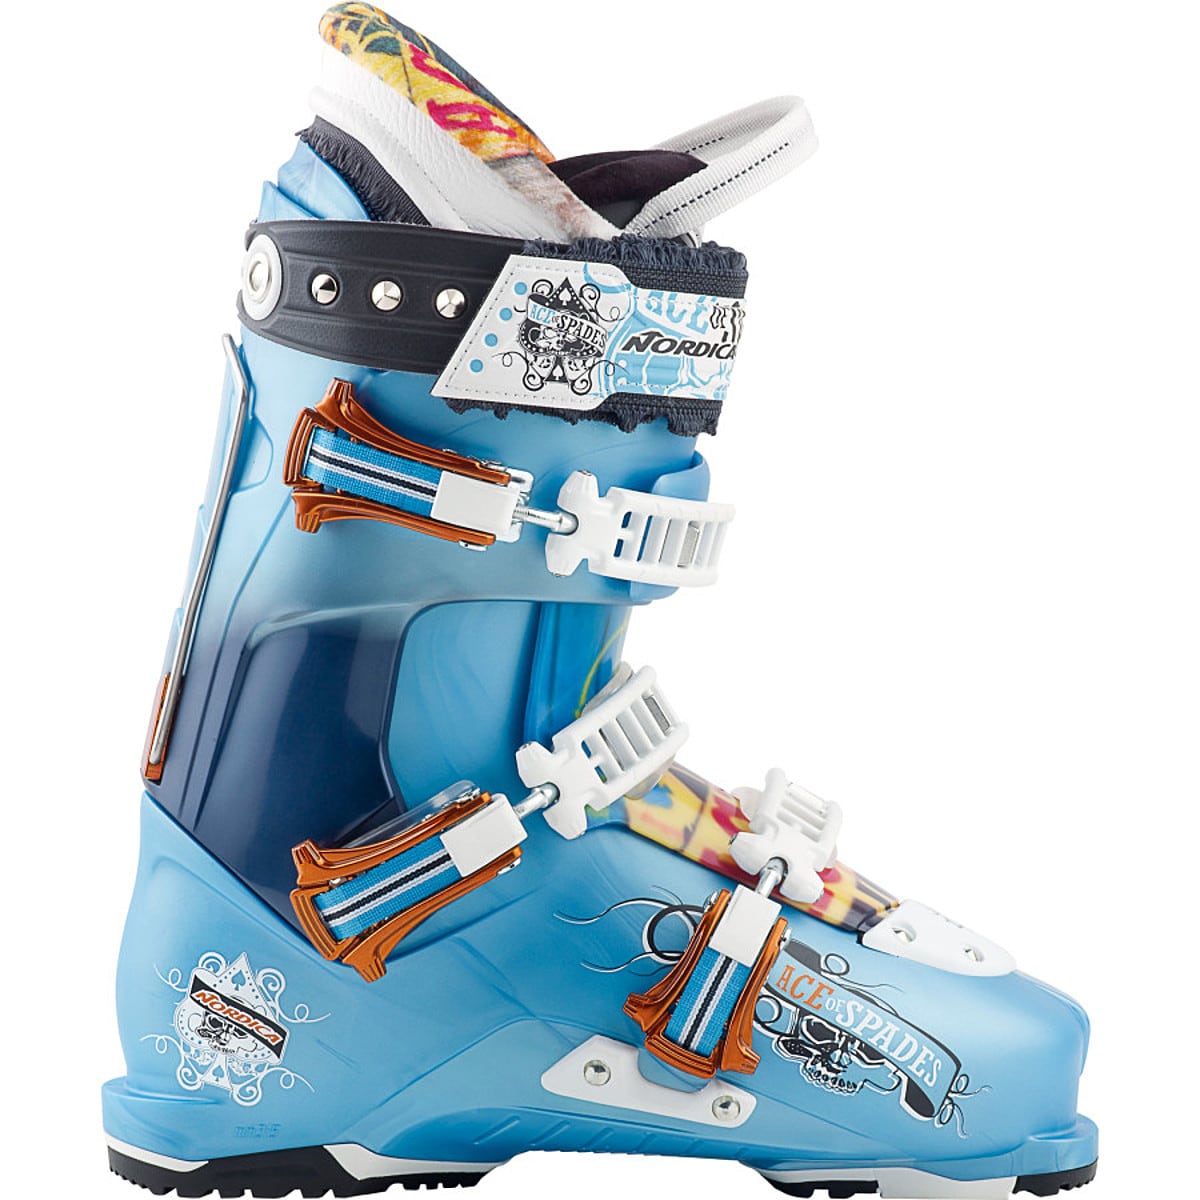 Nordica Ace Of Spades Ski Boot   Men's   Ski